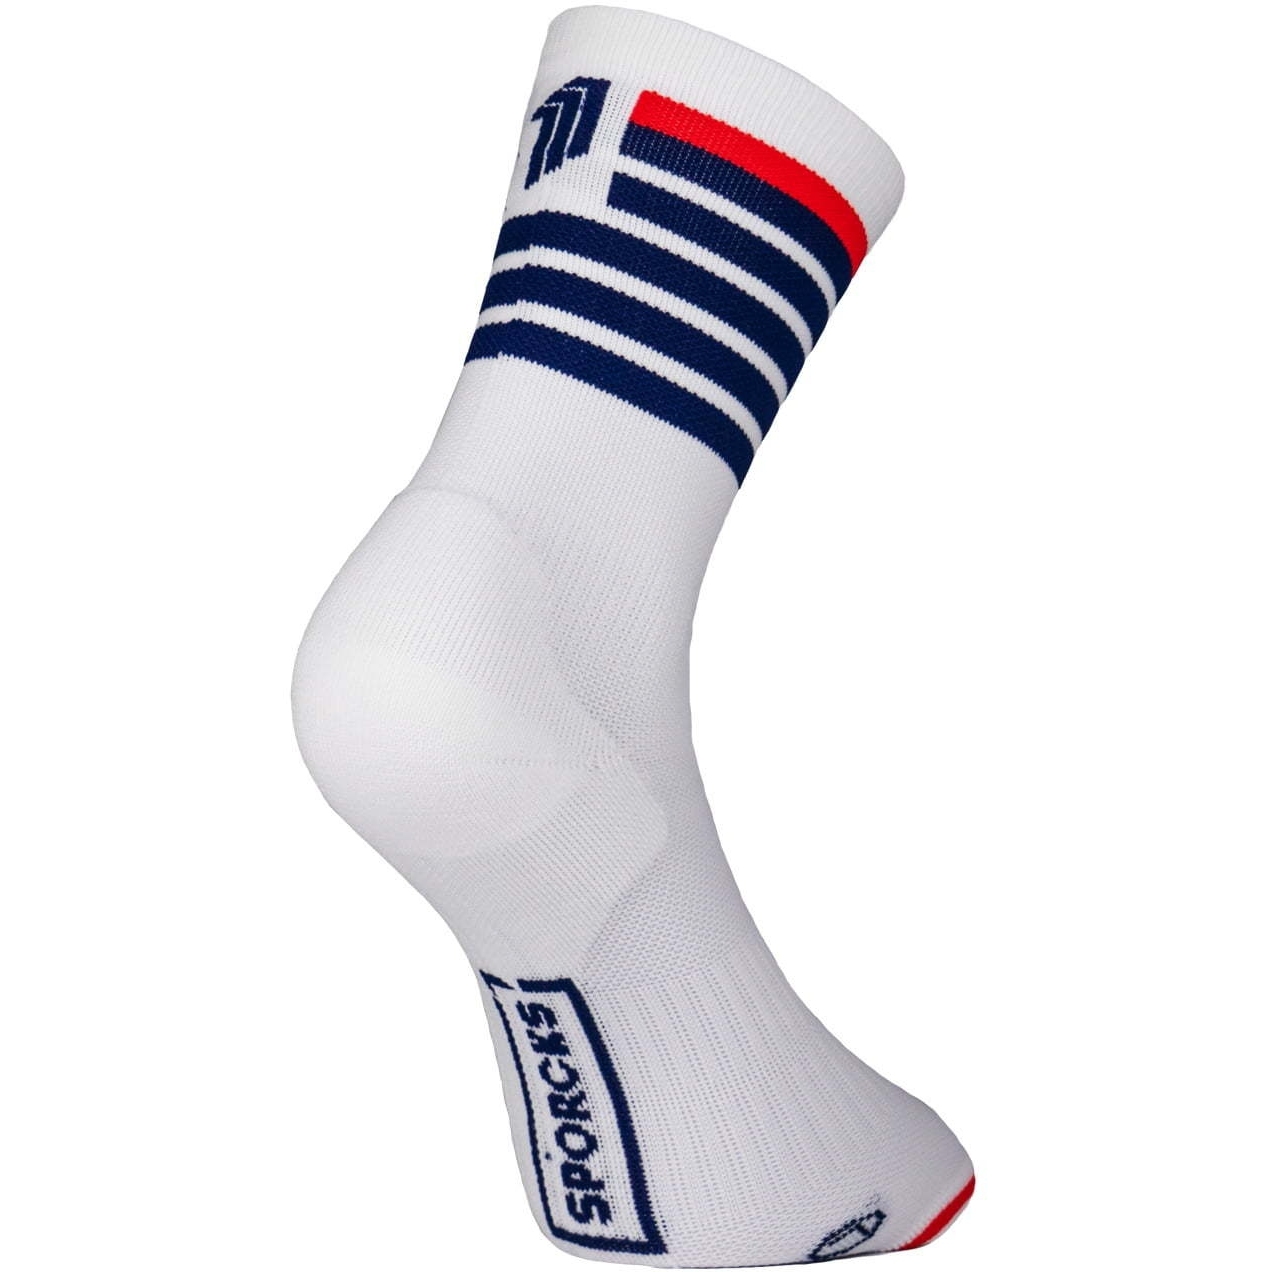 Produktbild von SPORCKS Triathlon Socken - Red Air